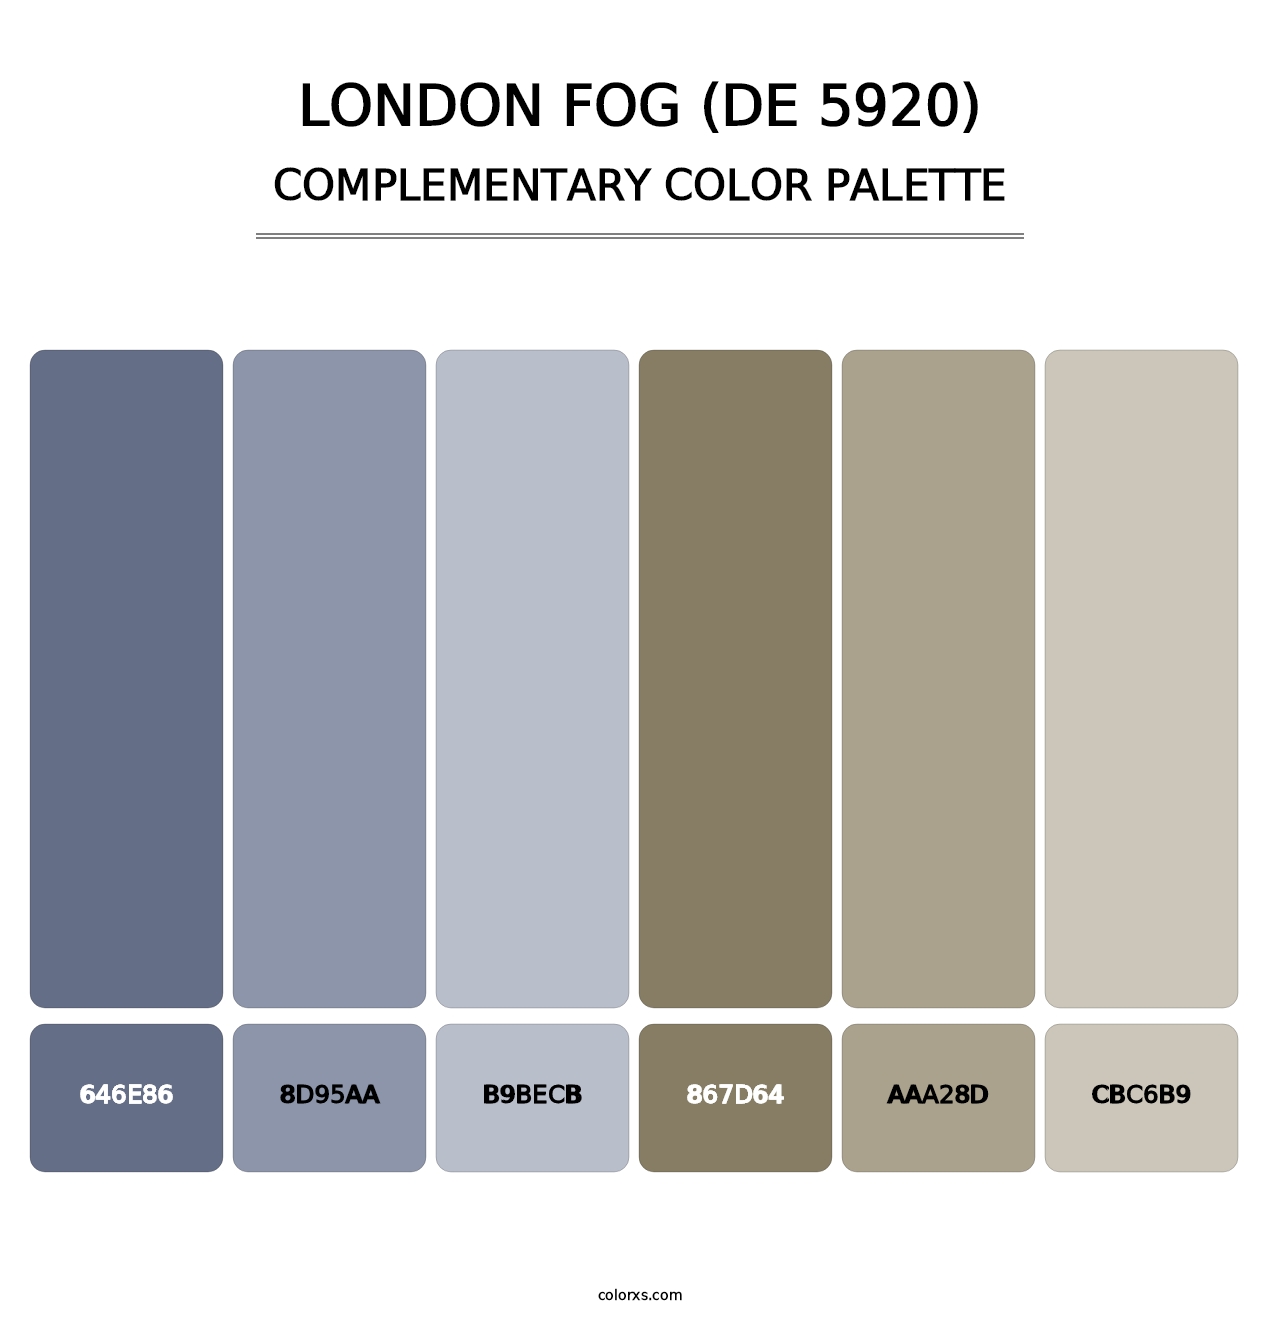 London Fog (DE 5920) - Complementary Color Palette